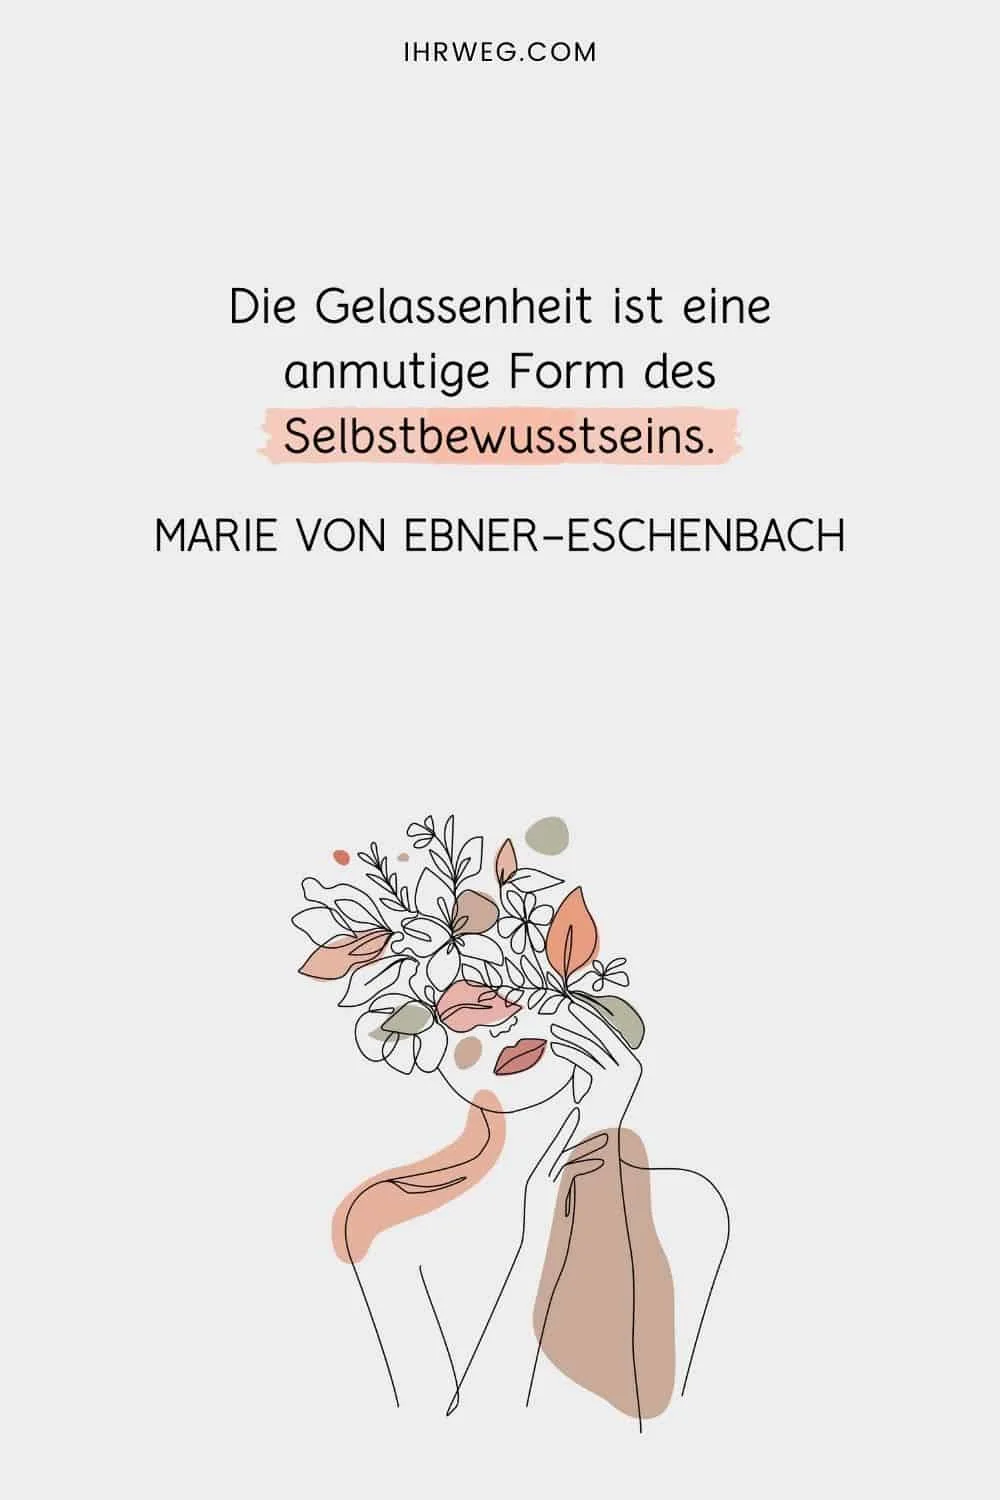 Die Gelassenheit ist eine anmutige Form des Selbstbewusstseins - Marie von Ebner-Eschenbach